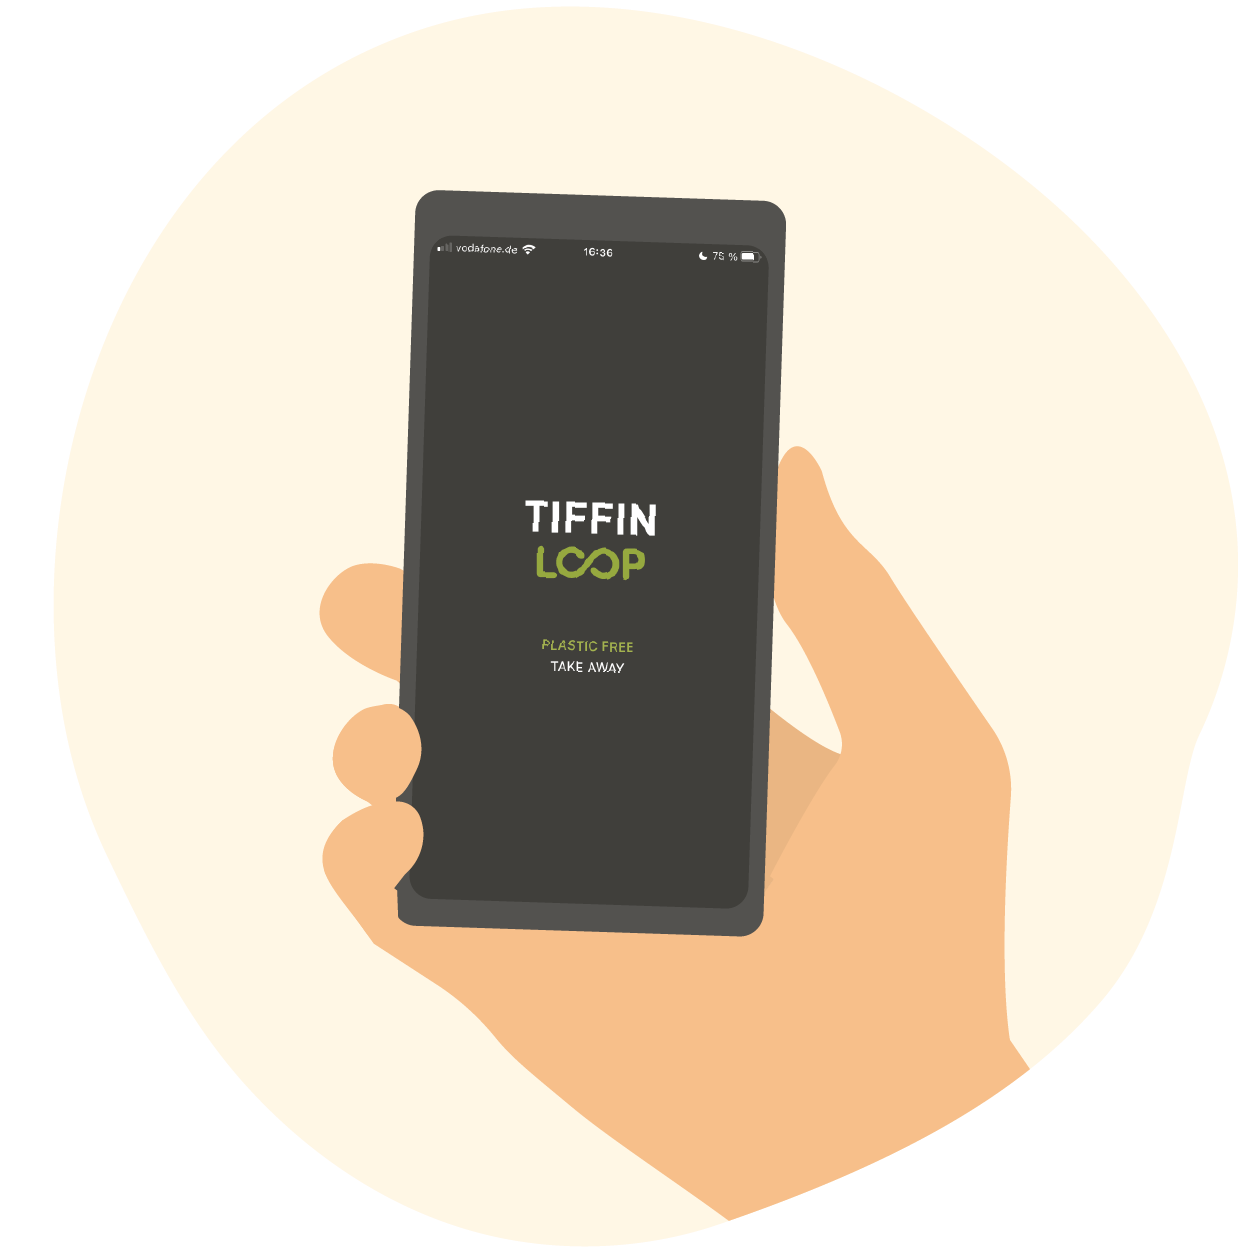 Tiffin Loop auf dem Smartphone